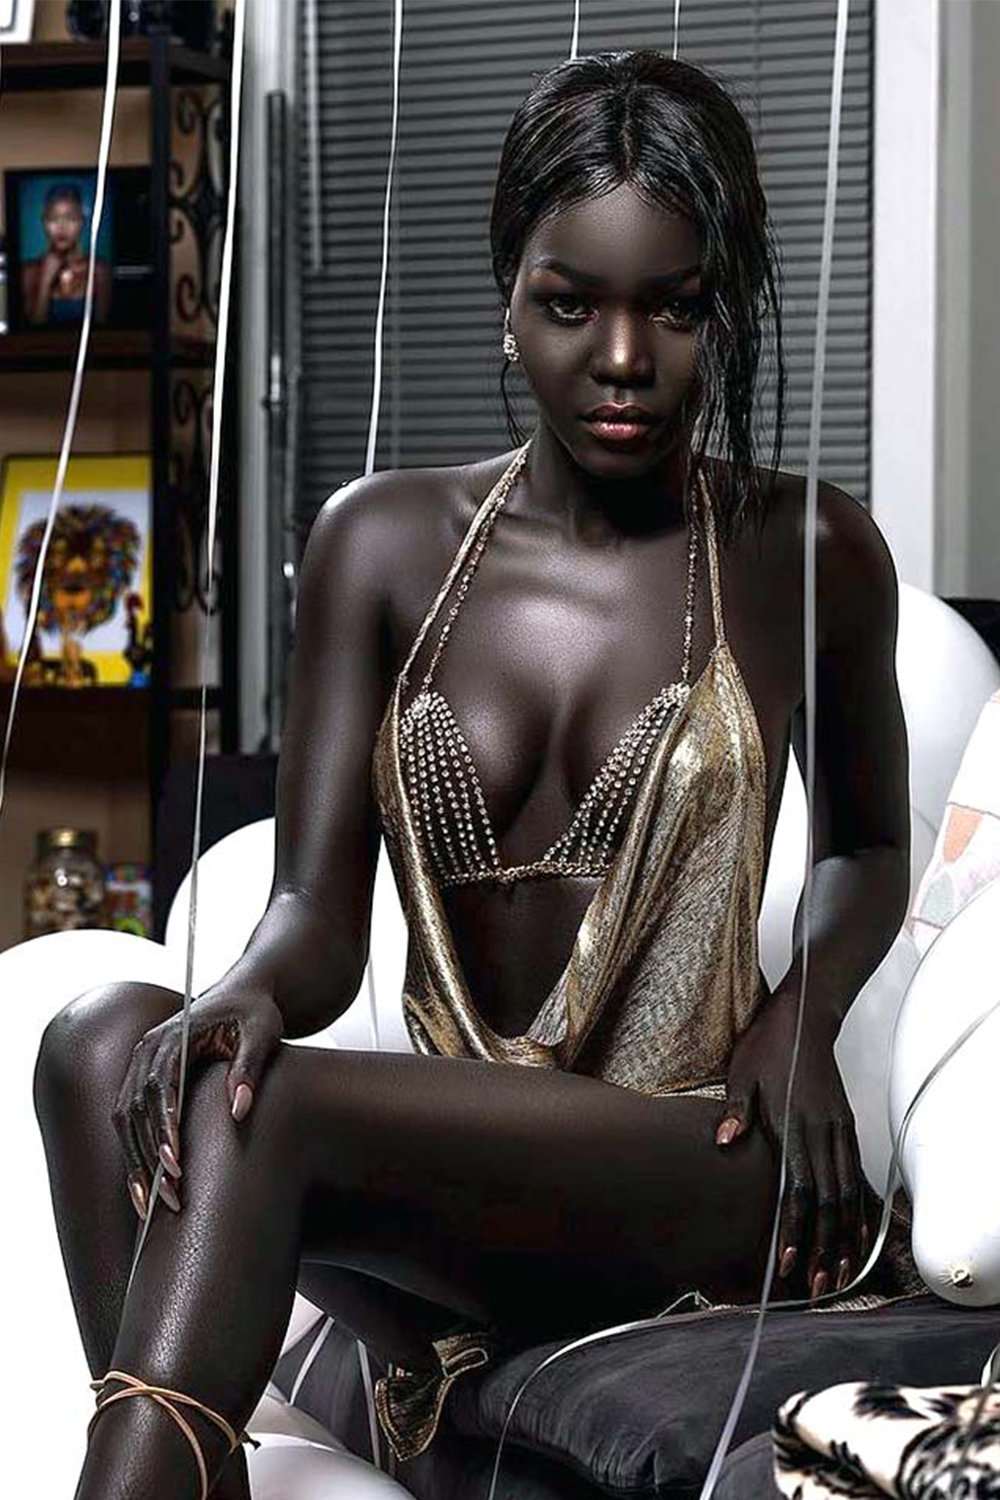 Негритянки близко. Няким Гатвеч. Нуаким Гатвеч модель из Южного Судана. Королева тьмы модель из Южного Судана Ньяким. Nyakim Gatwech (Ньяким Гатвеч) - 24-летняя модель.